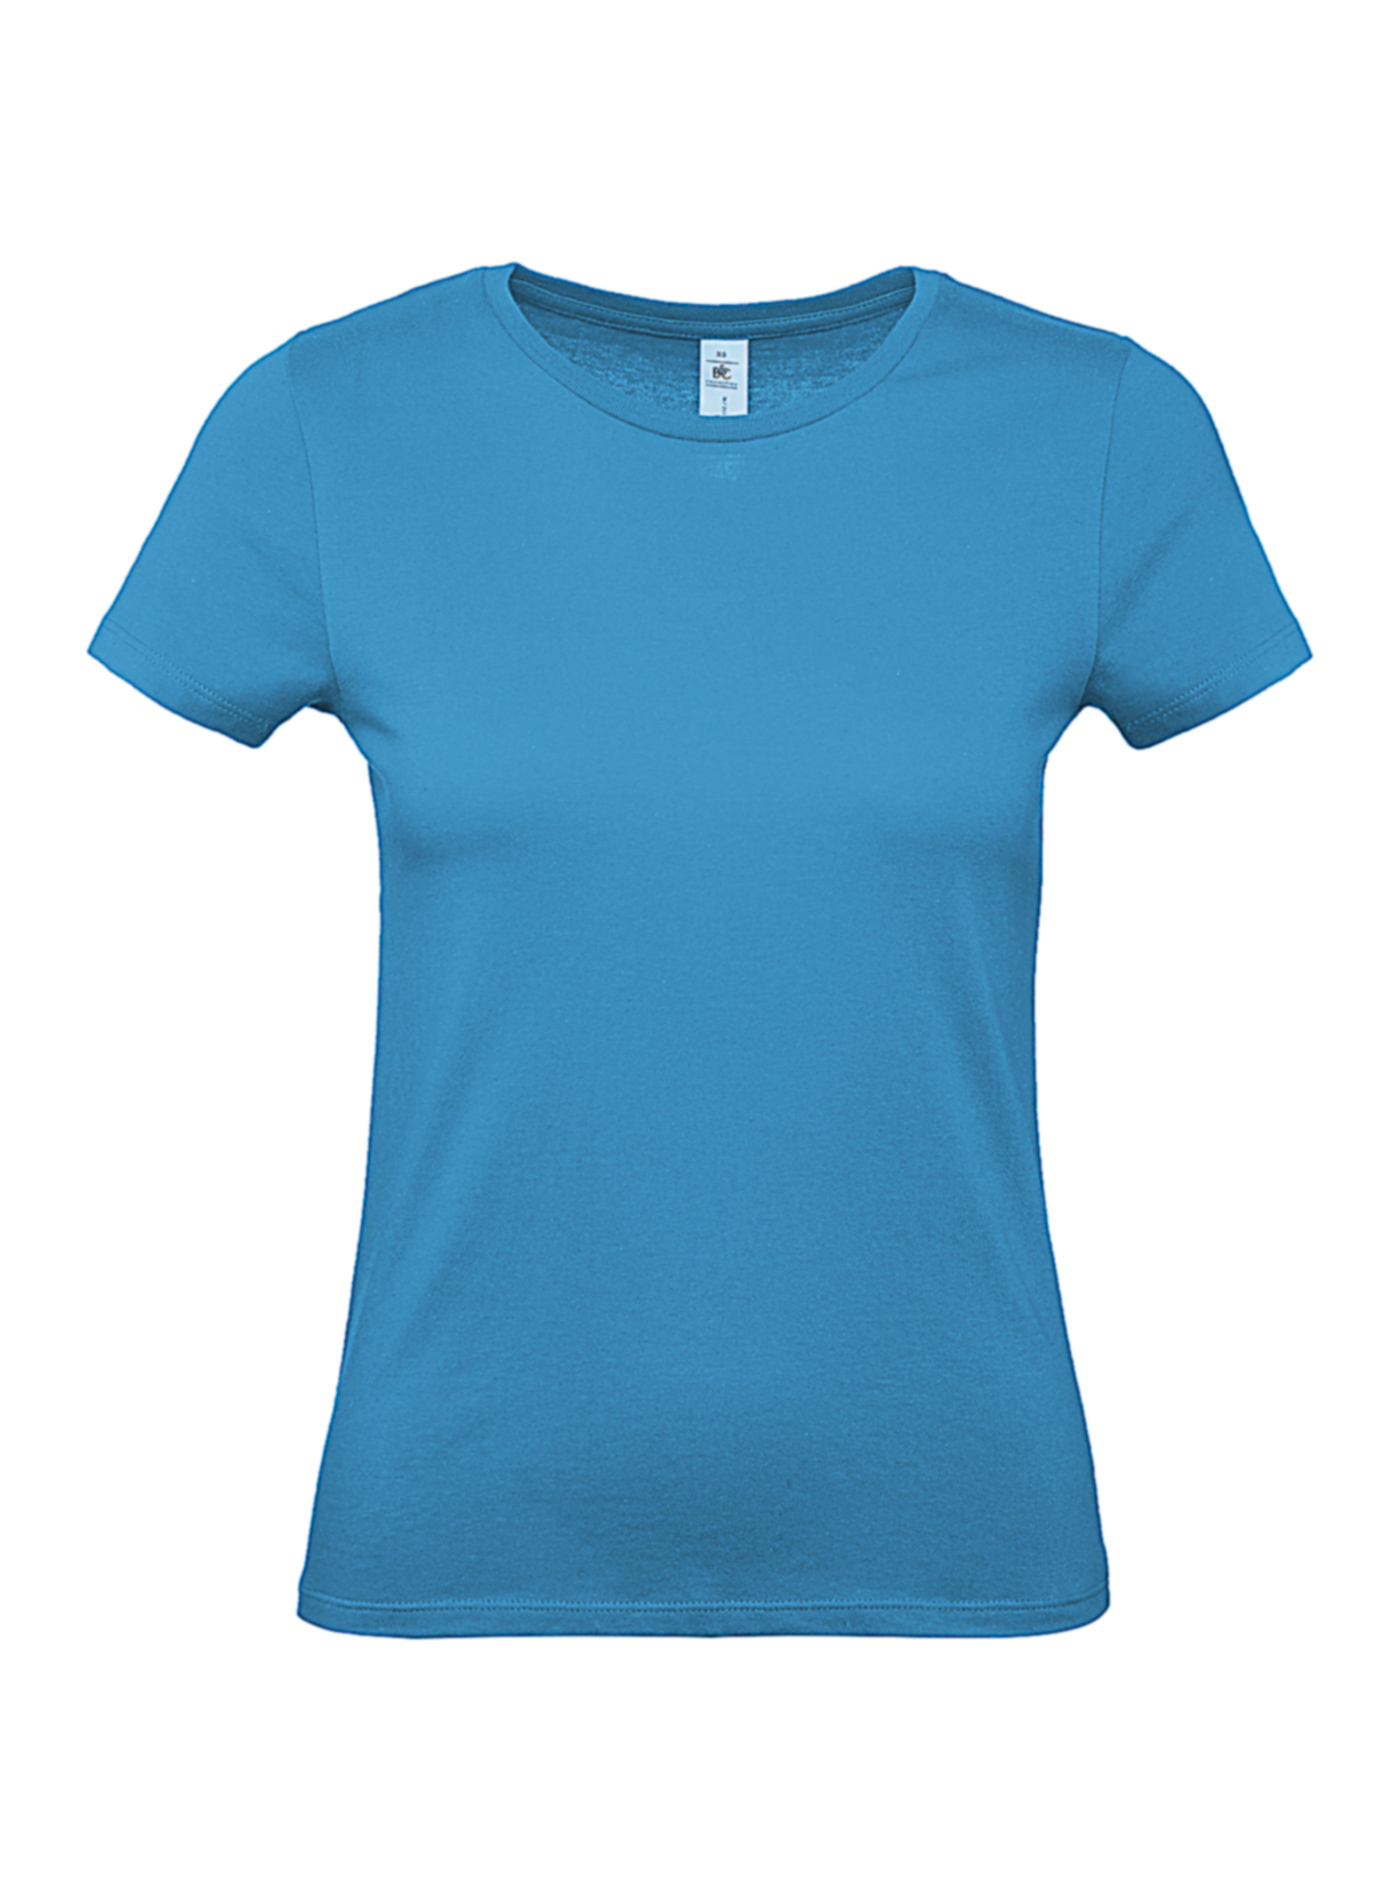 Dámské tričko B&C - Blankytně modrá L